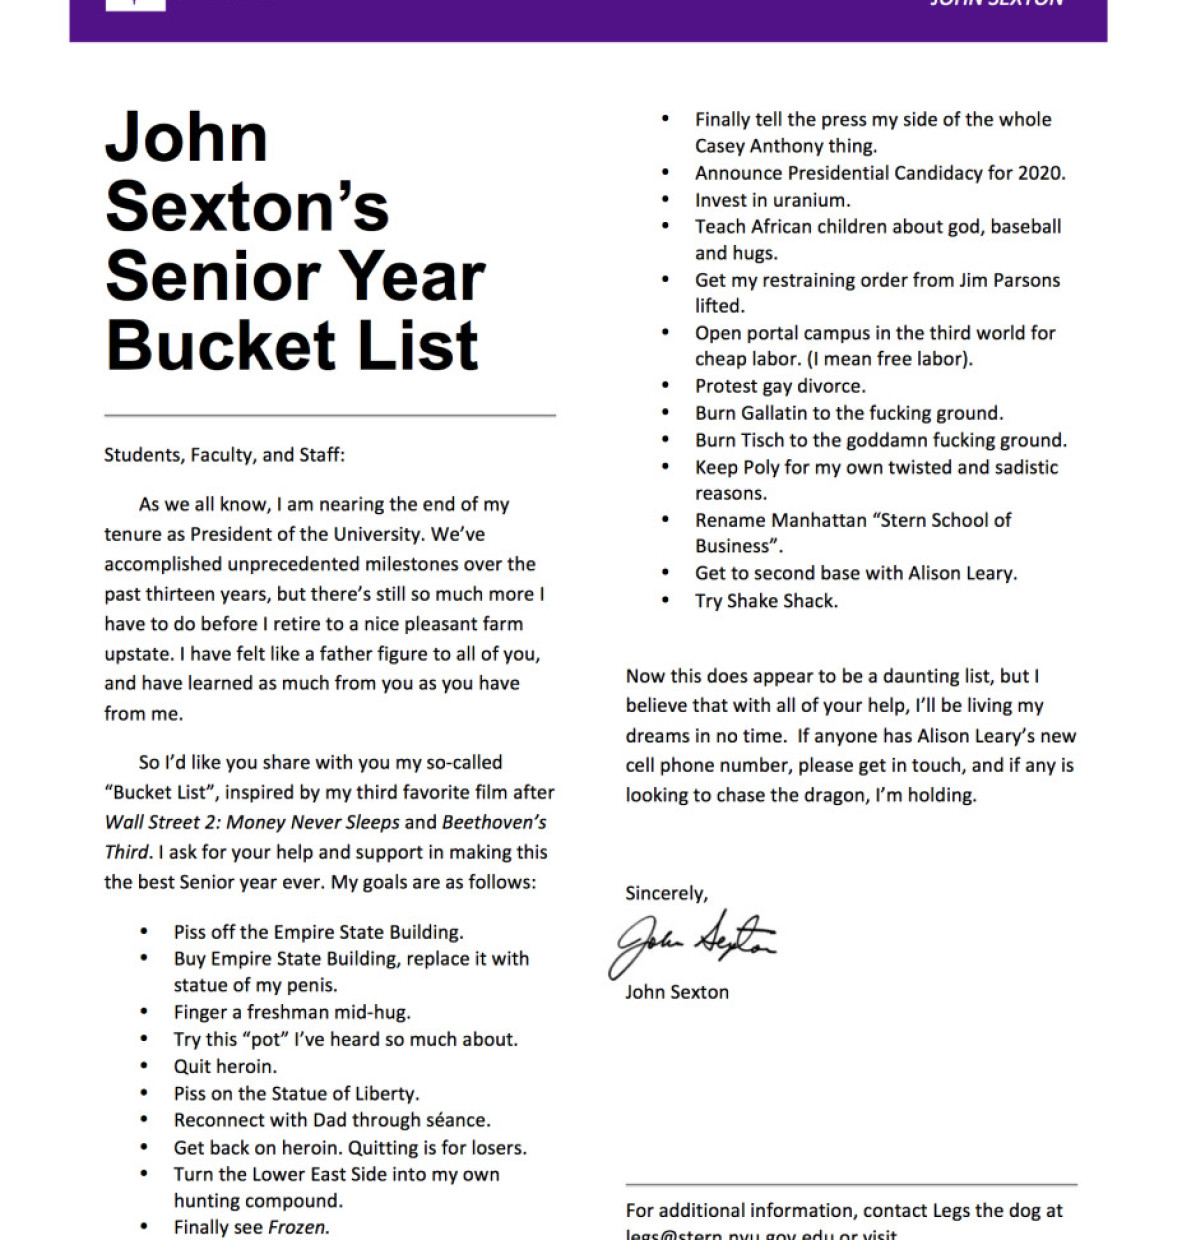 John Sexton’s Senior Year Bucket List